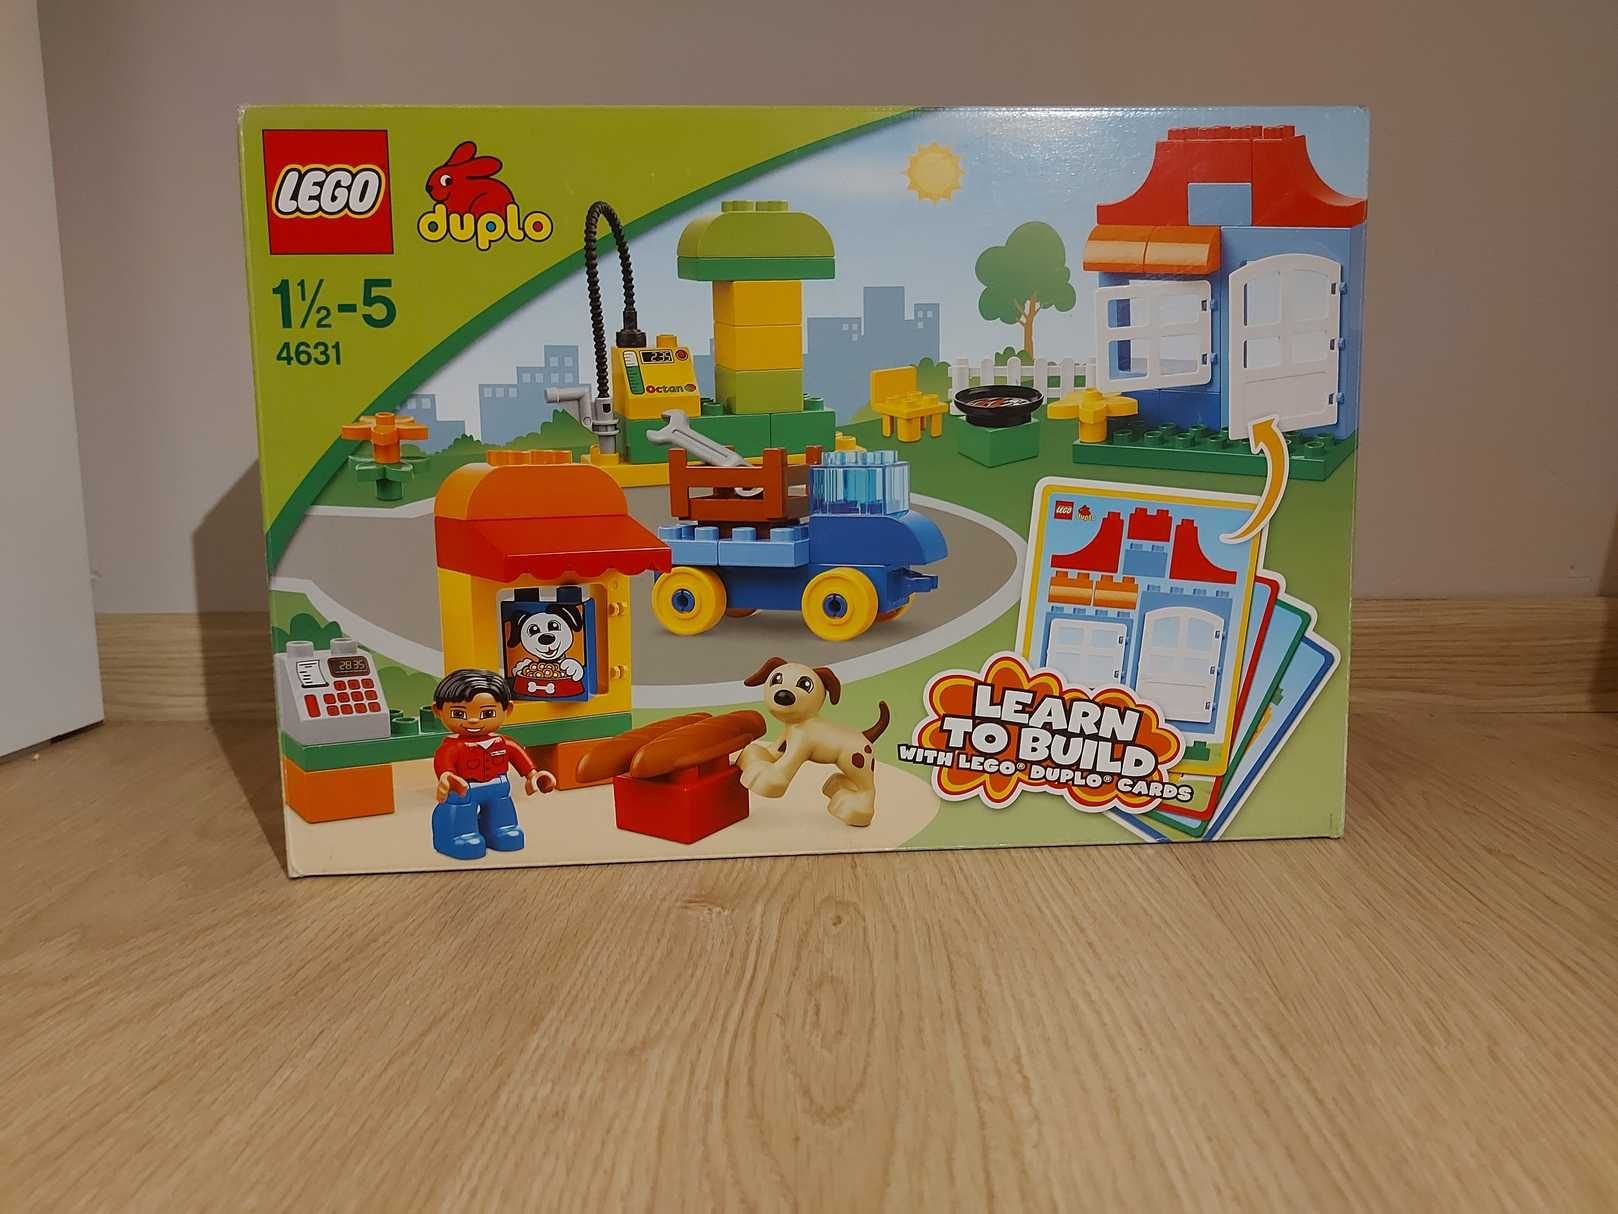 Lego Duplo 4631 moja pierwsza budowla